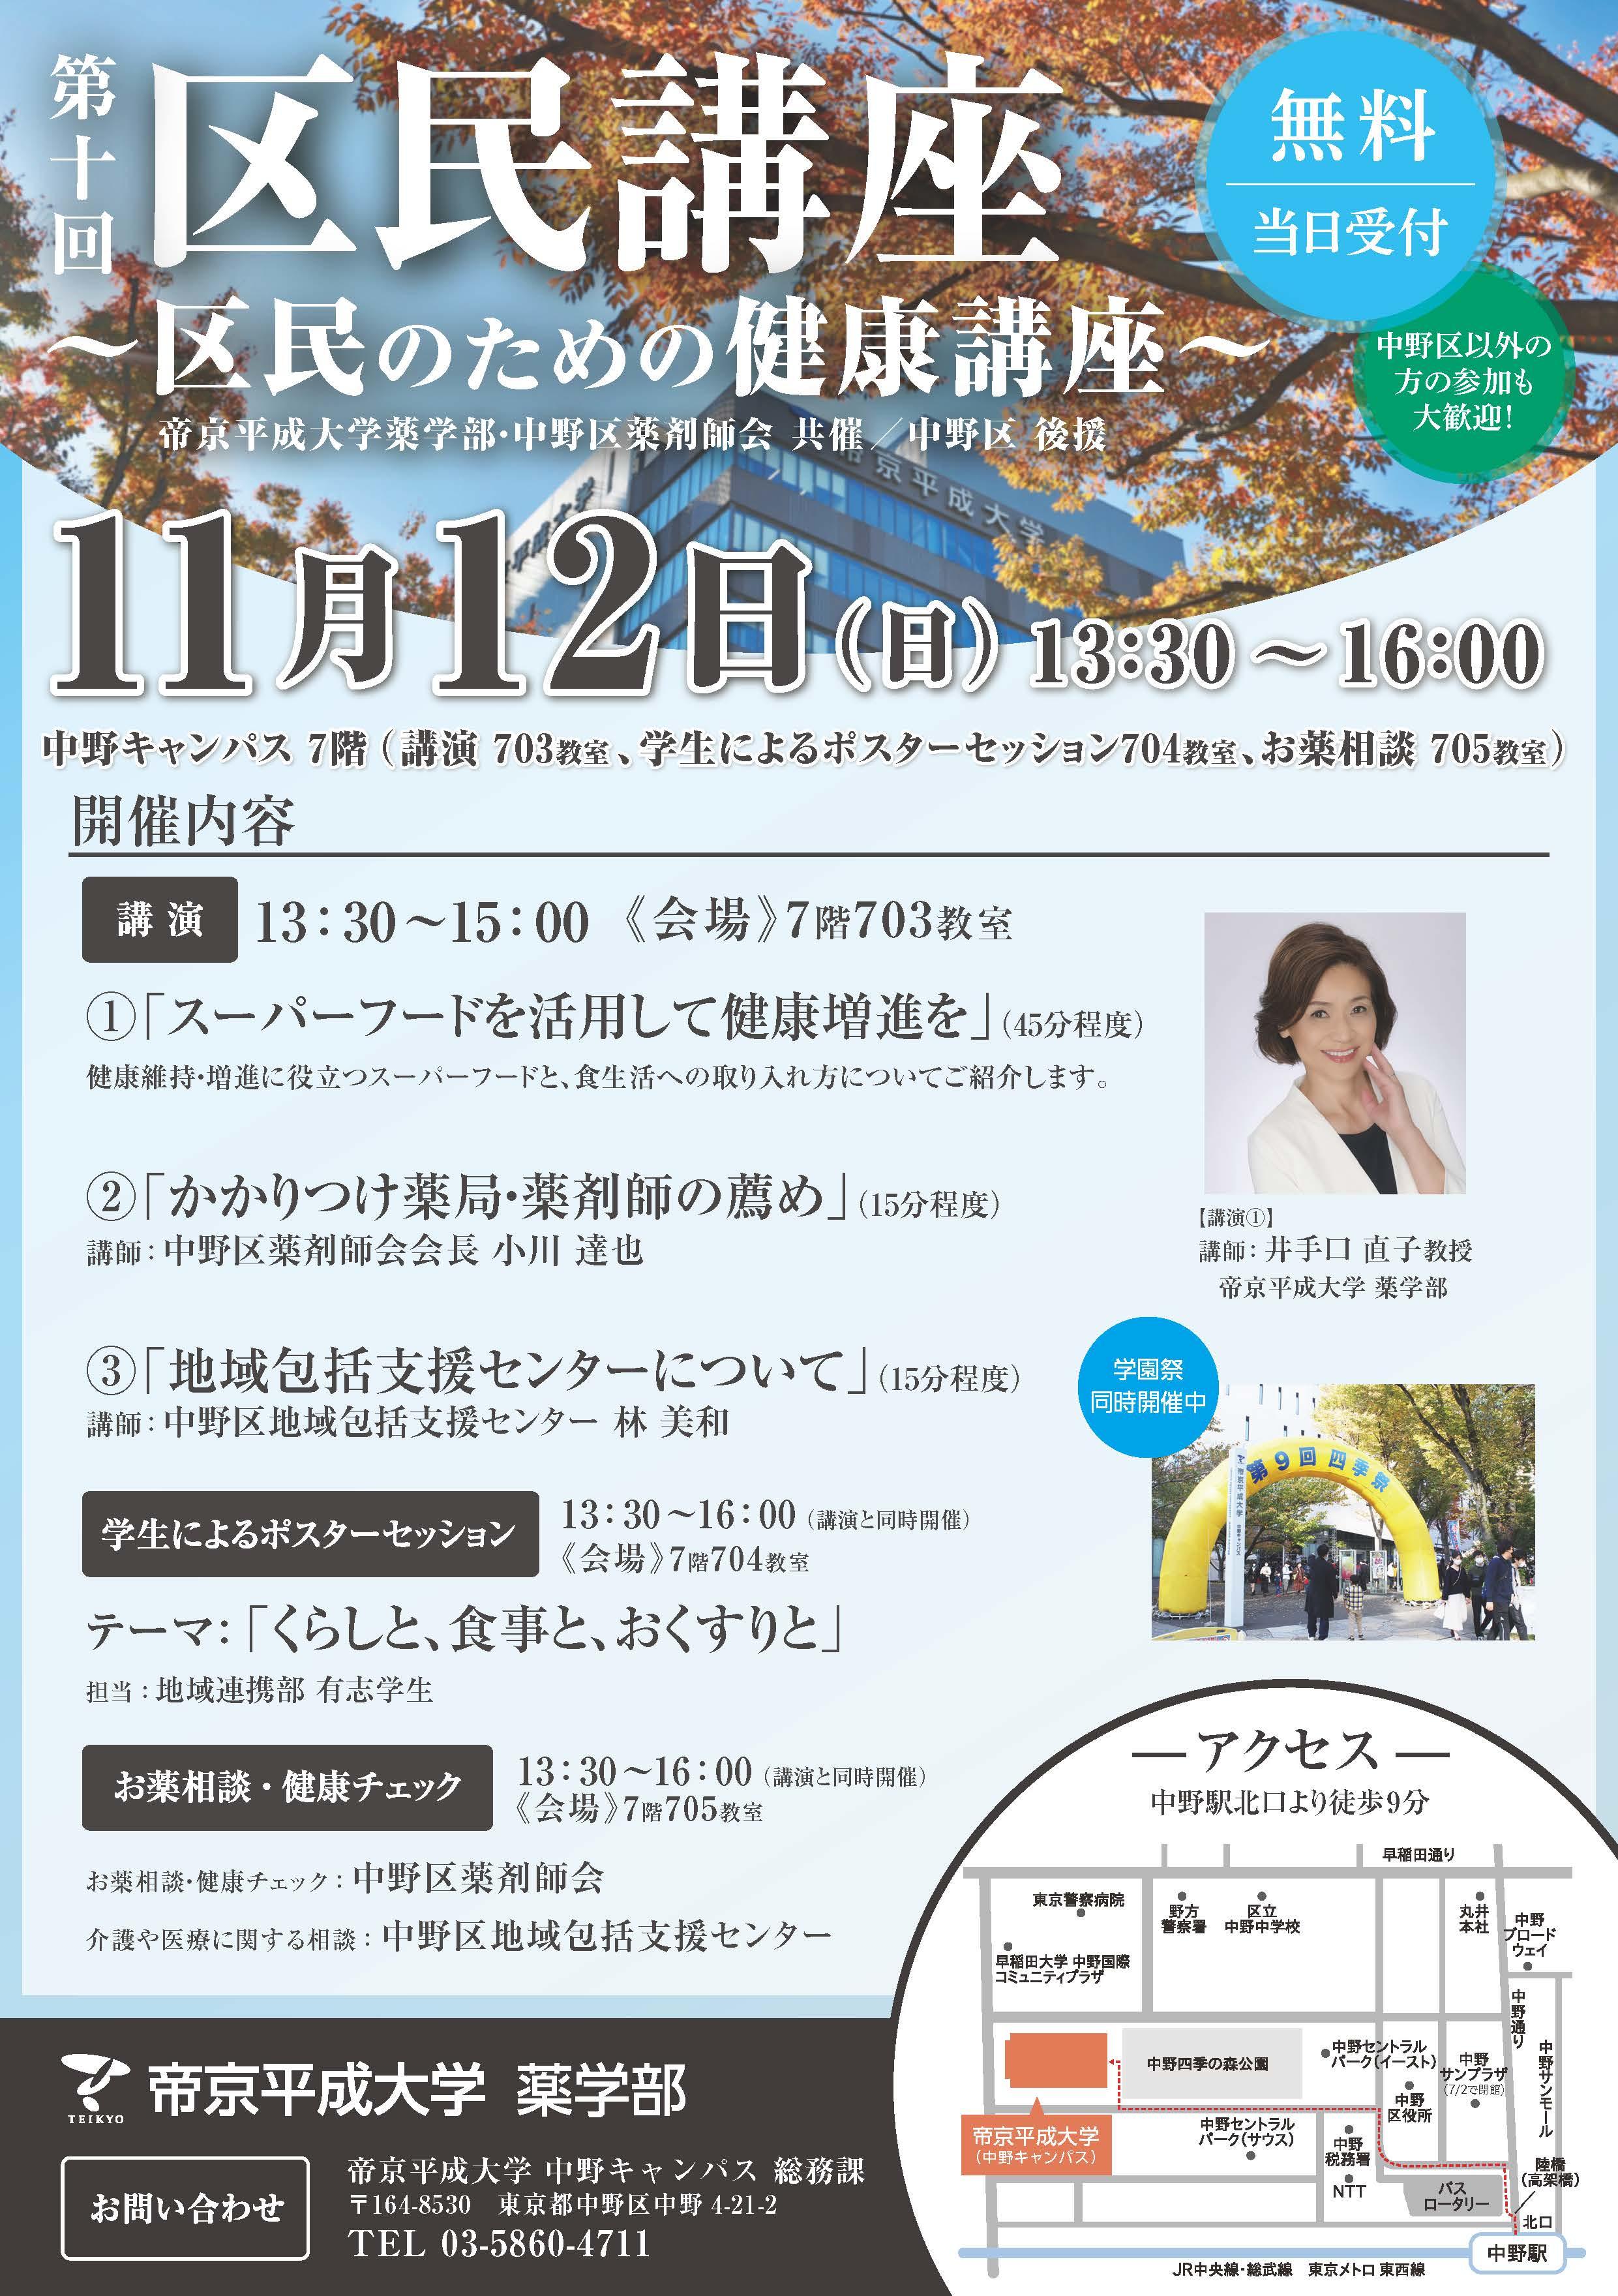 帝京平成大学が11月12日に中野キャンパスで「第10回区民講座 ～区民のための健康講座～」を開講 -- 健康や薬に関する講演とポスター展示、相談受付などを実施